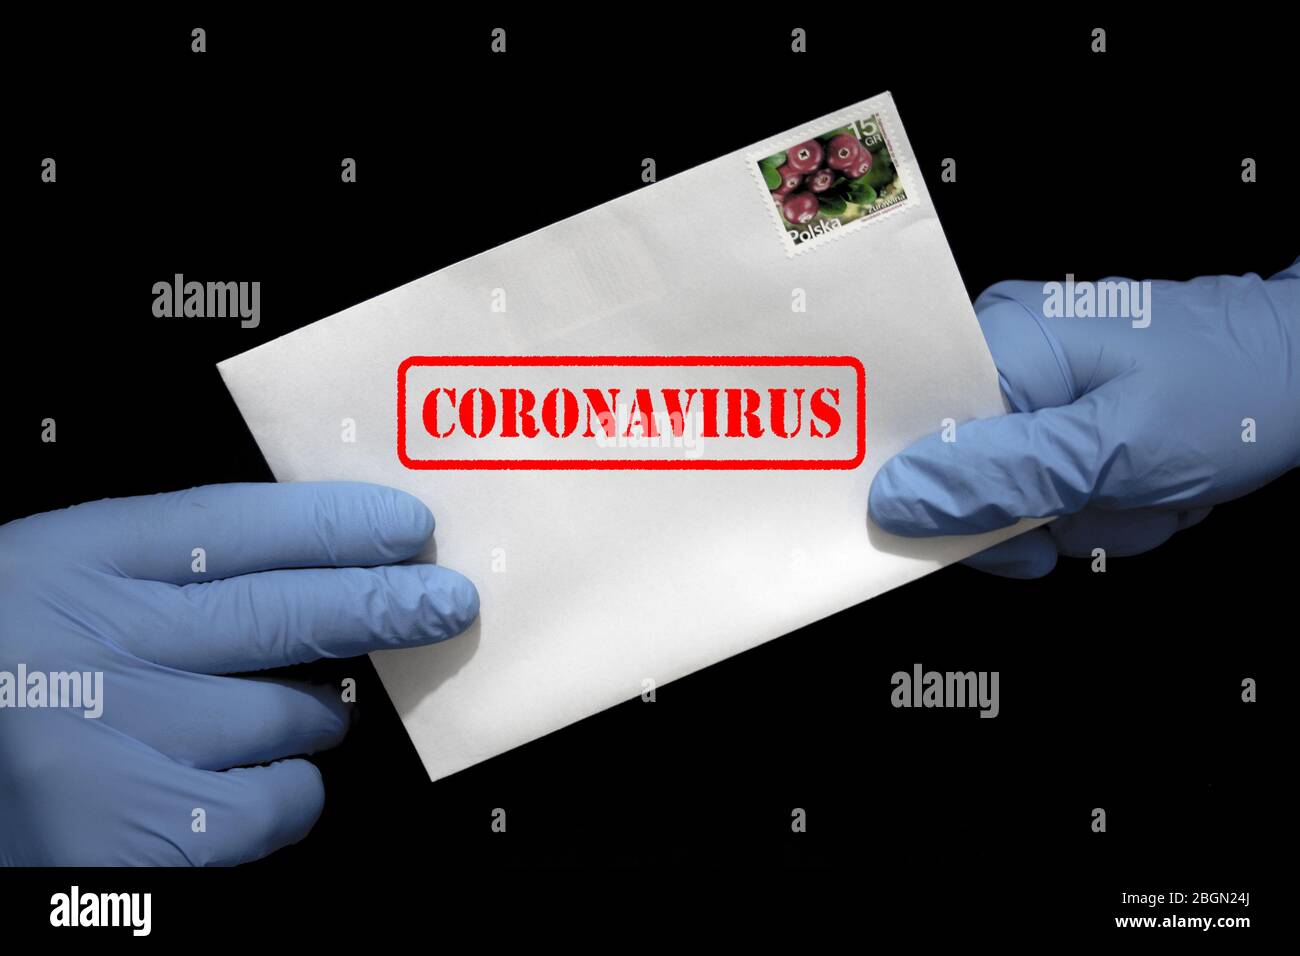 Une main humaine dans des gants de protection contenant une lettre qui peut contenir le virus COVID-19. Les postes peuvent propager le coronavirus. Banque D'Images